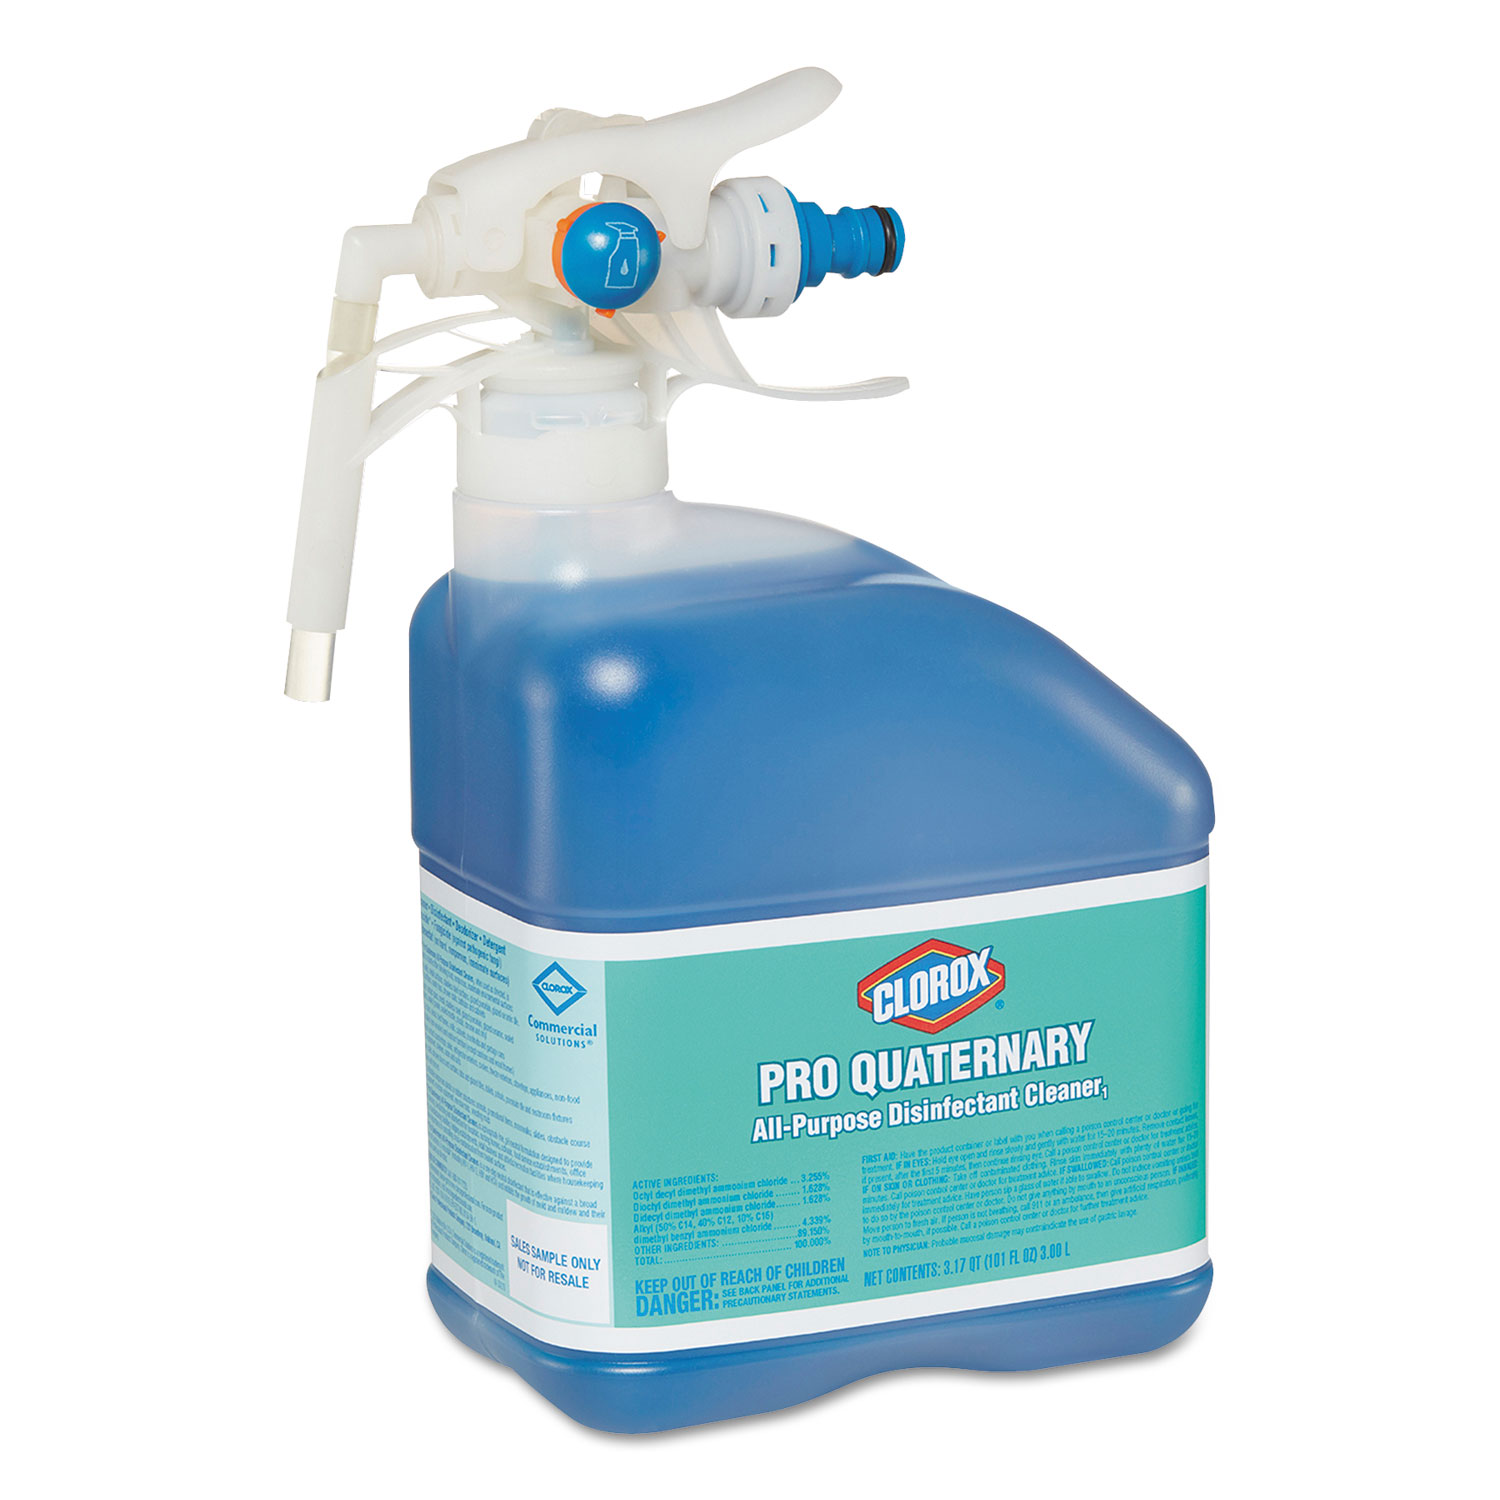 Pro Quaternary All-Purpose Disinfecting Cleaner, Liquid, 101 oz, 2/Carton